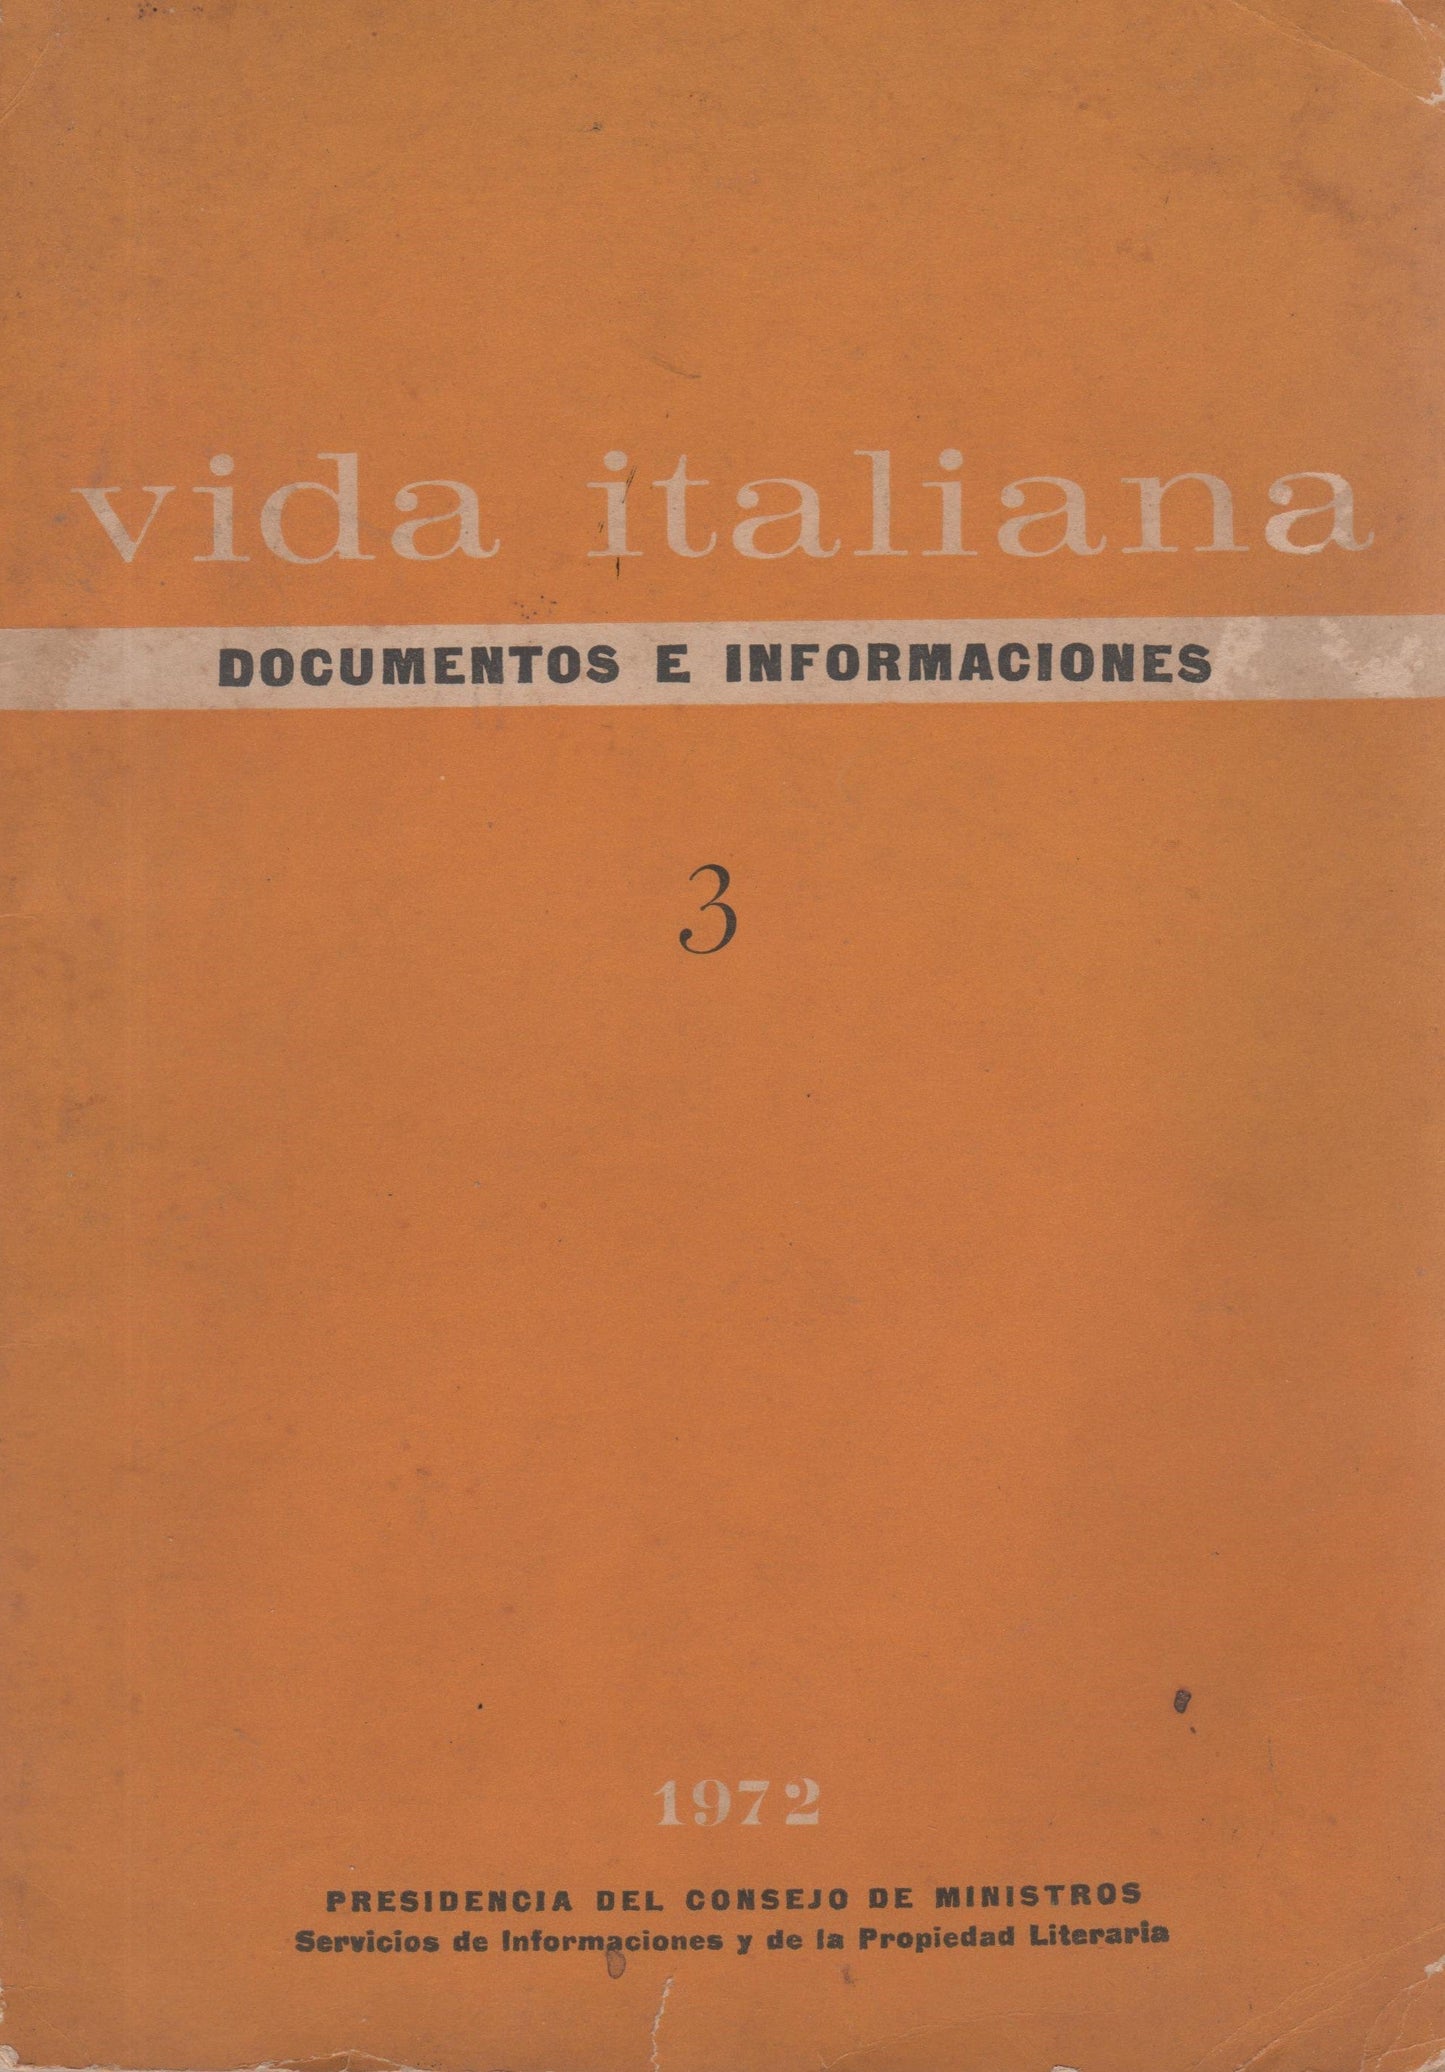 Vida italiana: Documentos e informaciones